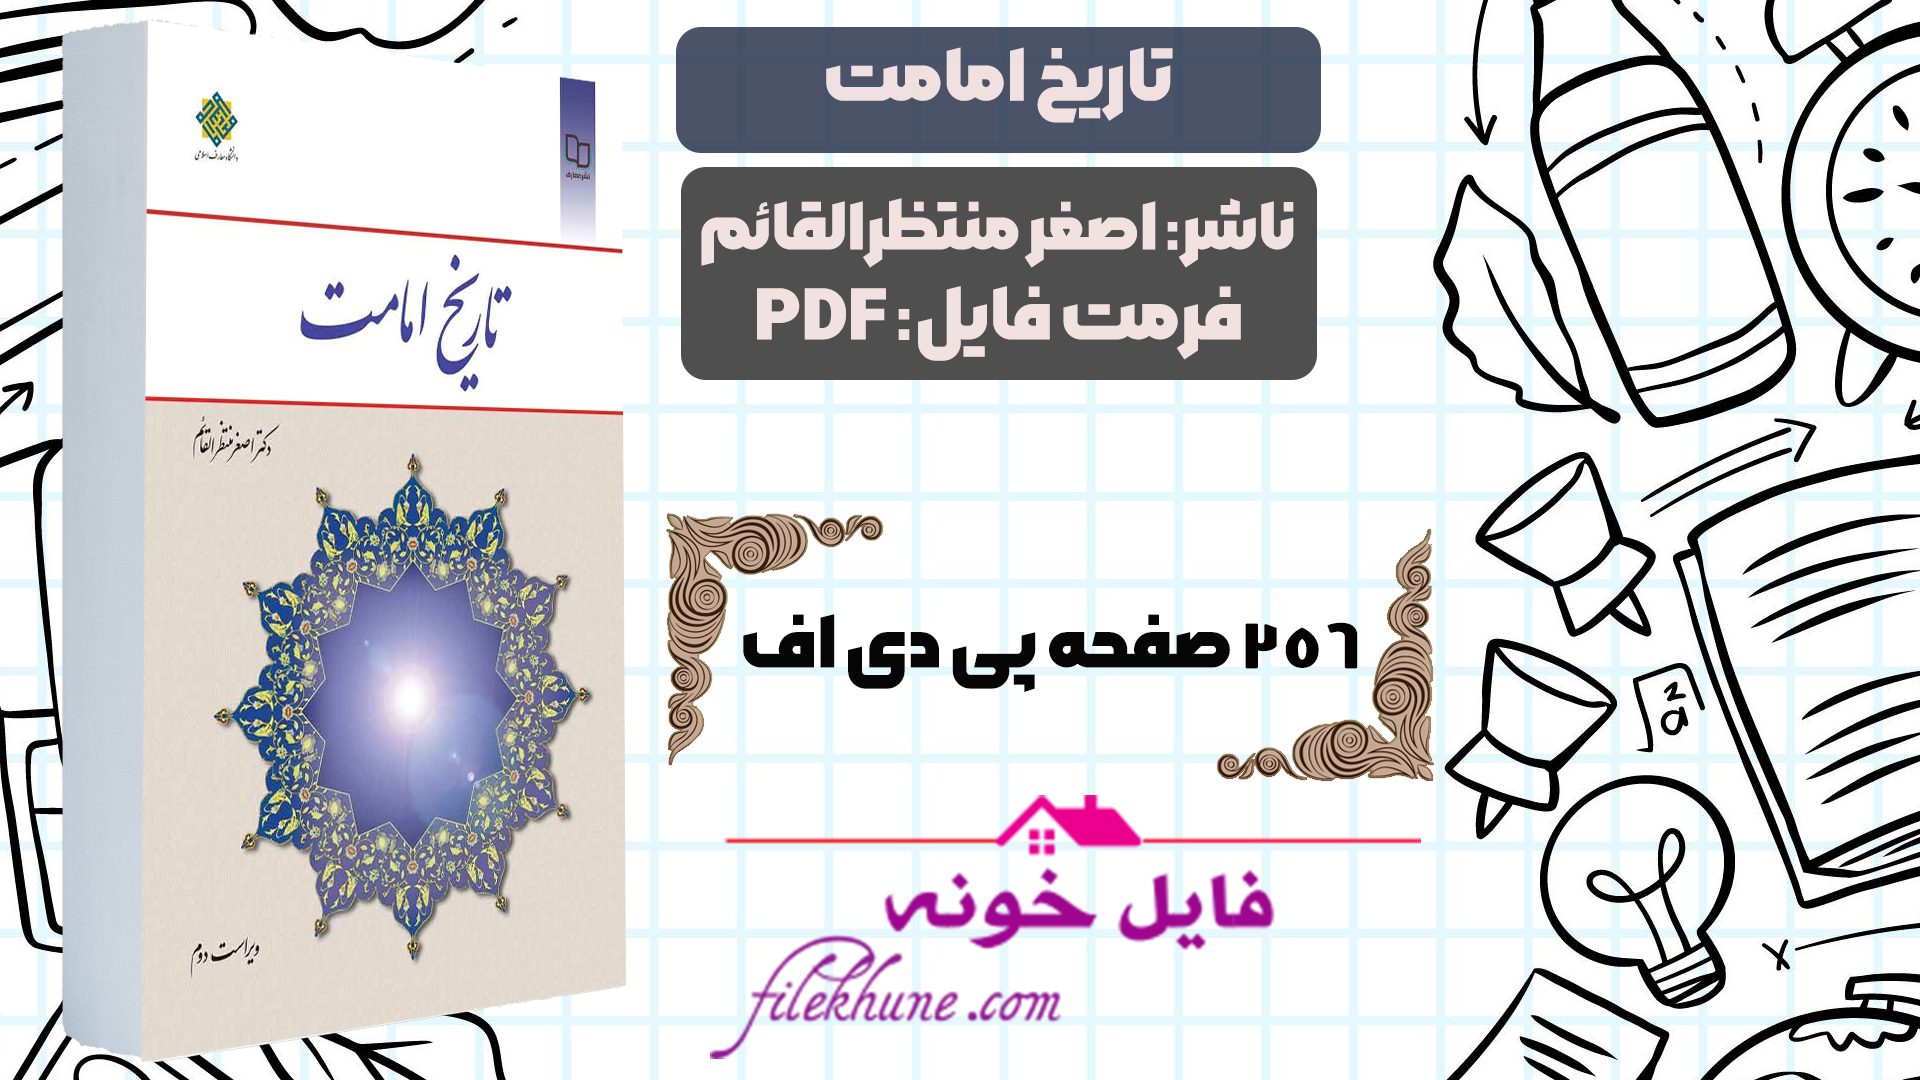 دانلود کتاب تاریخ امامت دکتر اصغر منتظرالقائم PDF - فایل خونه 